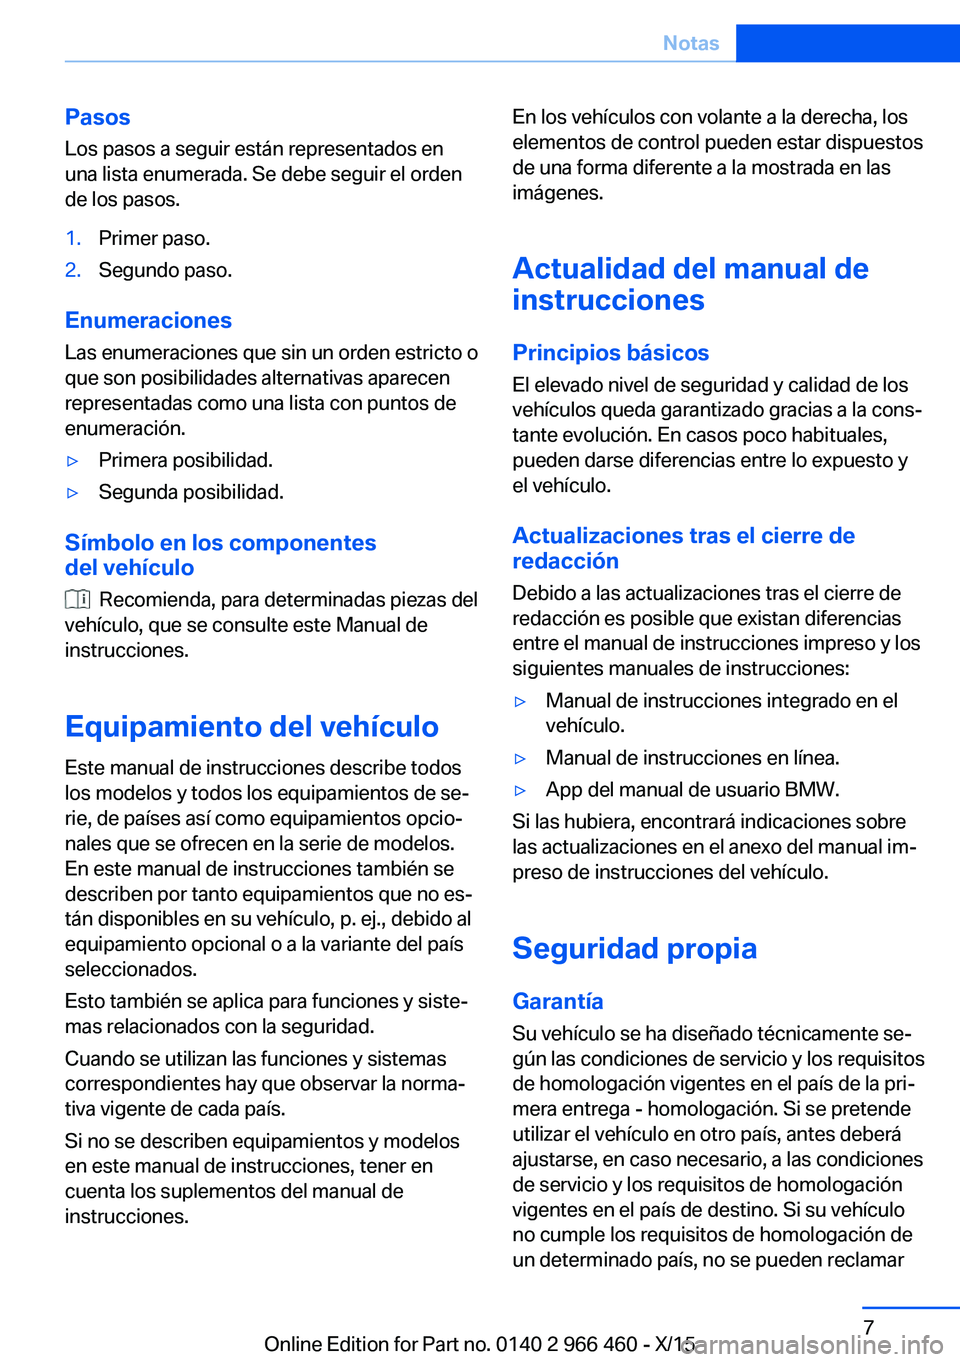 BMW 7 SERIES 2016  Manuales de Empleo (in Spanish) Pasos
Los pasos a seguir están representados en
una lista enumerada. Se debe seguir el orden
de los pasos.1.Primer paso.2.Segundo paso.
Enumeraciones
Las enumeraciones que sin un orden estricto o
que